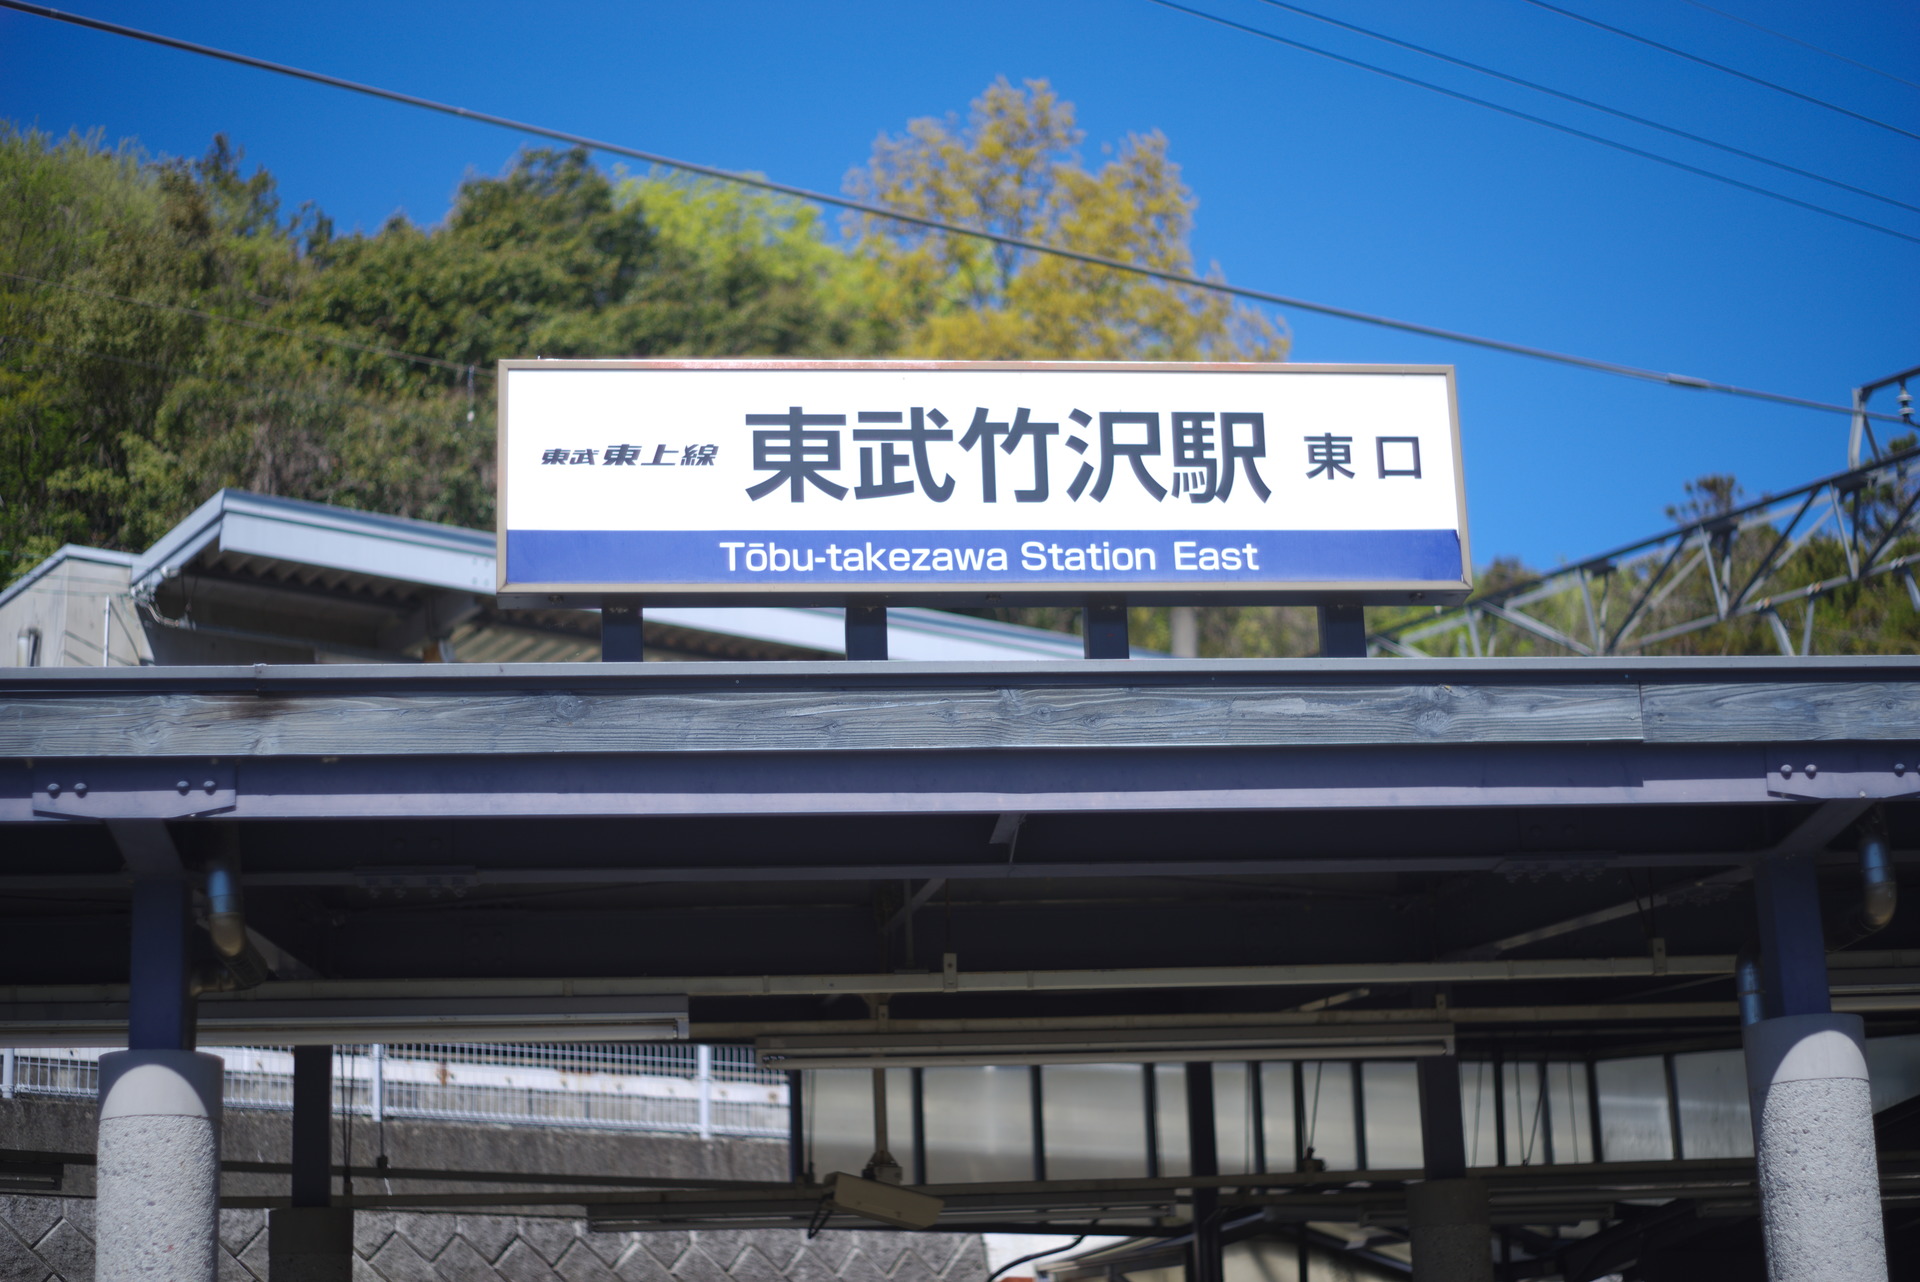 東武竹沢駅 みなみ寄居駅を歩く 東武東上線を歩く もっと